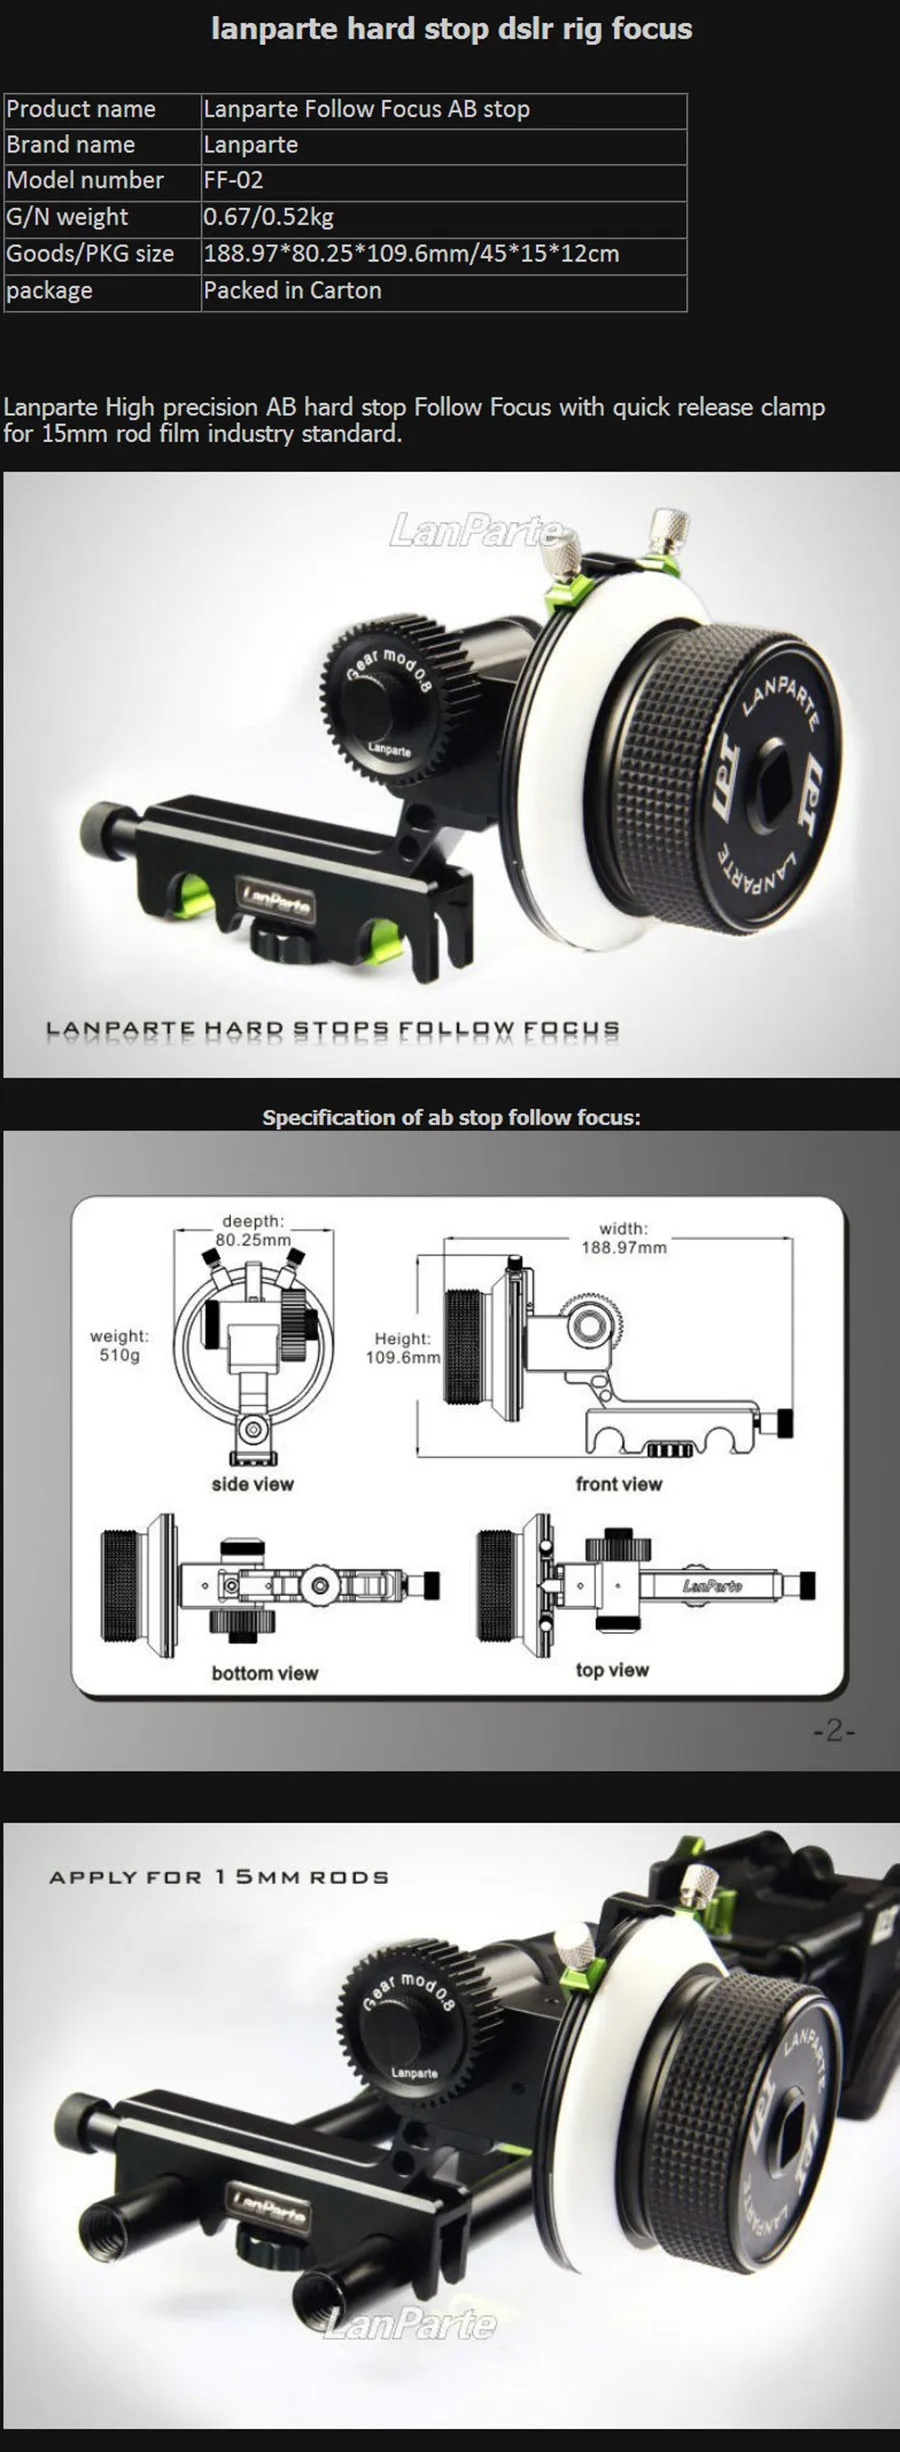 Lanparte Видео камера последующий фокус FF-02 AB лимит стоп быстрый выпуск с 15 мм Rig переходник стержня